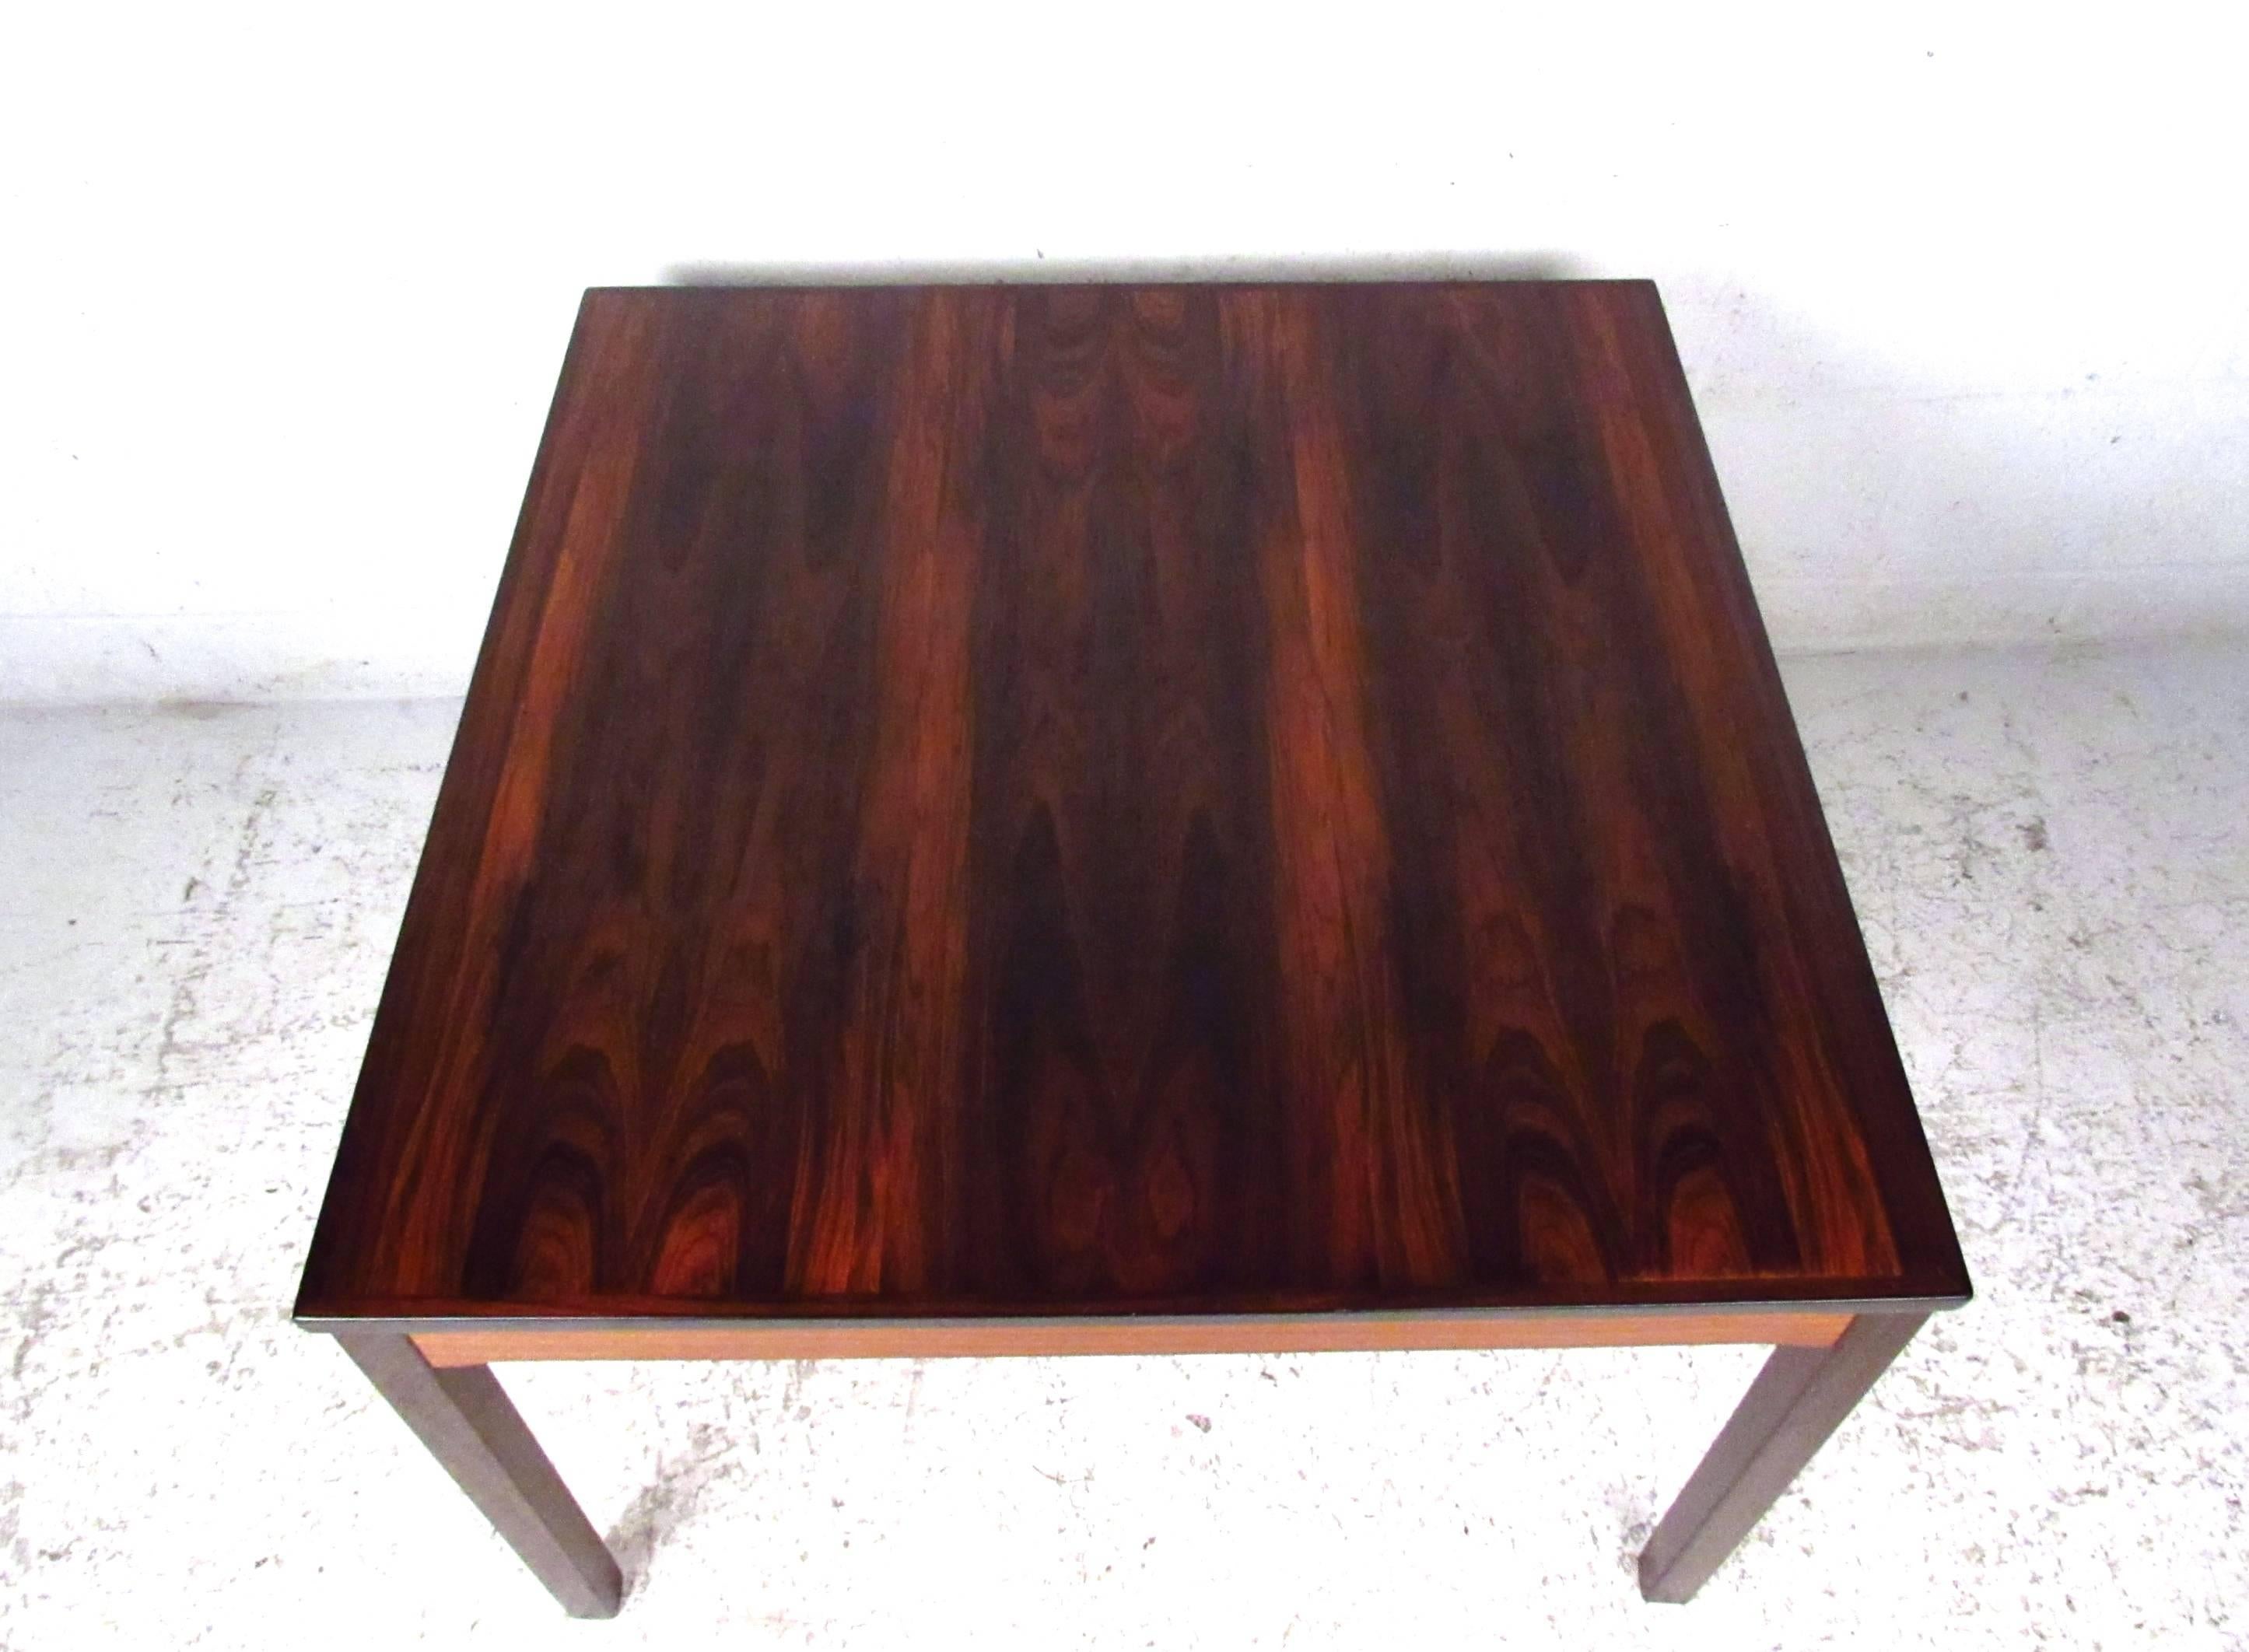 Dieser Couchtisch aus norwegischem Palisanderholz von Bruksbo hat ein reichhaltiges natürliches Palisander-Finish mit wunderschön gebänderten, beleuchteten Seitenstützen. Die hochwertige Midcentury-Konstruktion macht diesen Vintage-Tisch zu einer